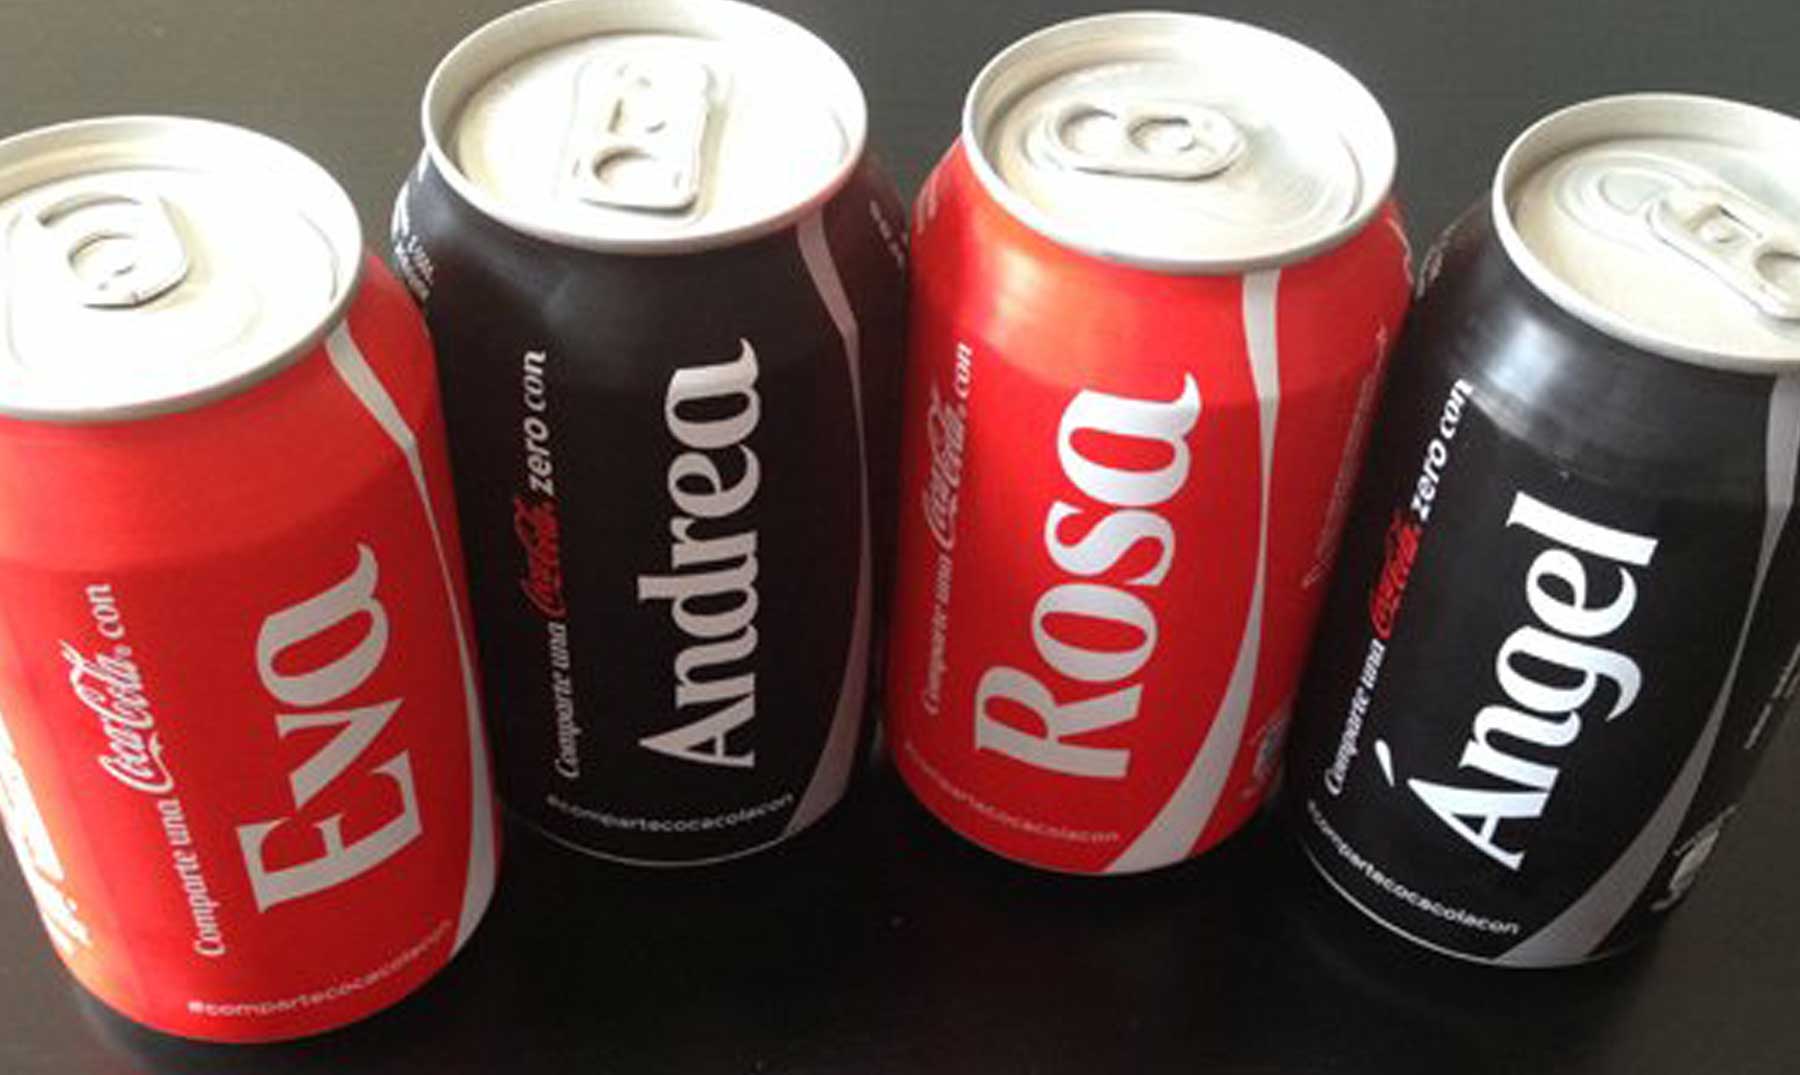 ¿Cuáles son los nombres que aparecen en las latas de Coca-cola?